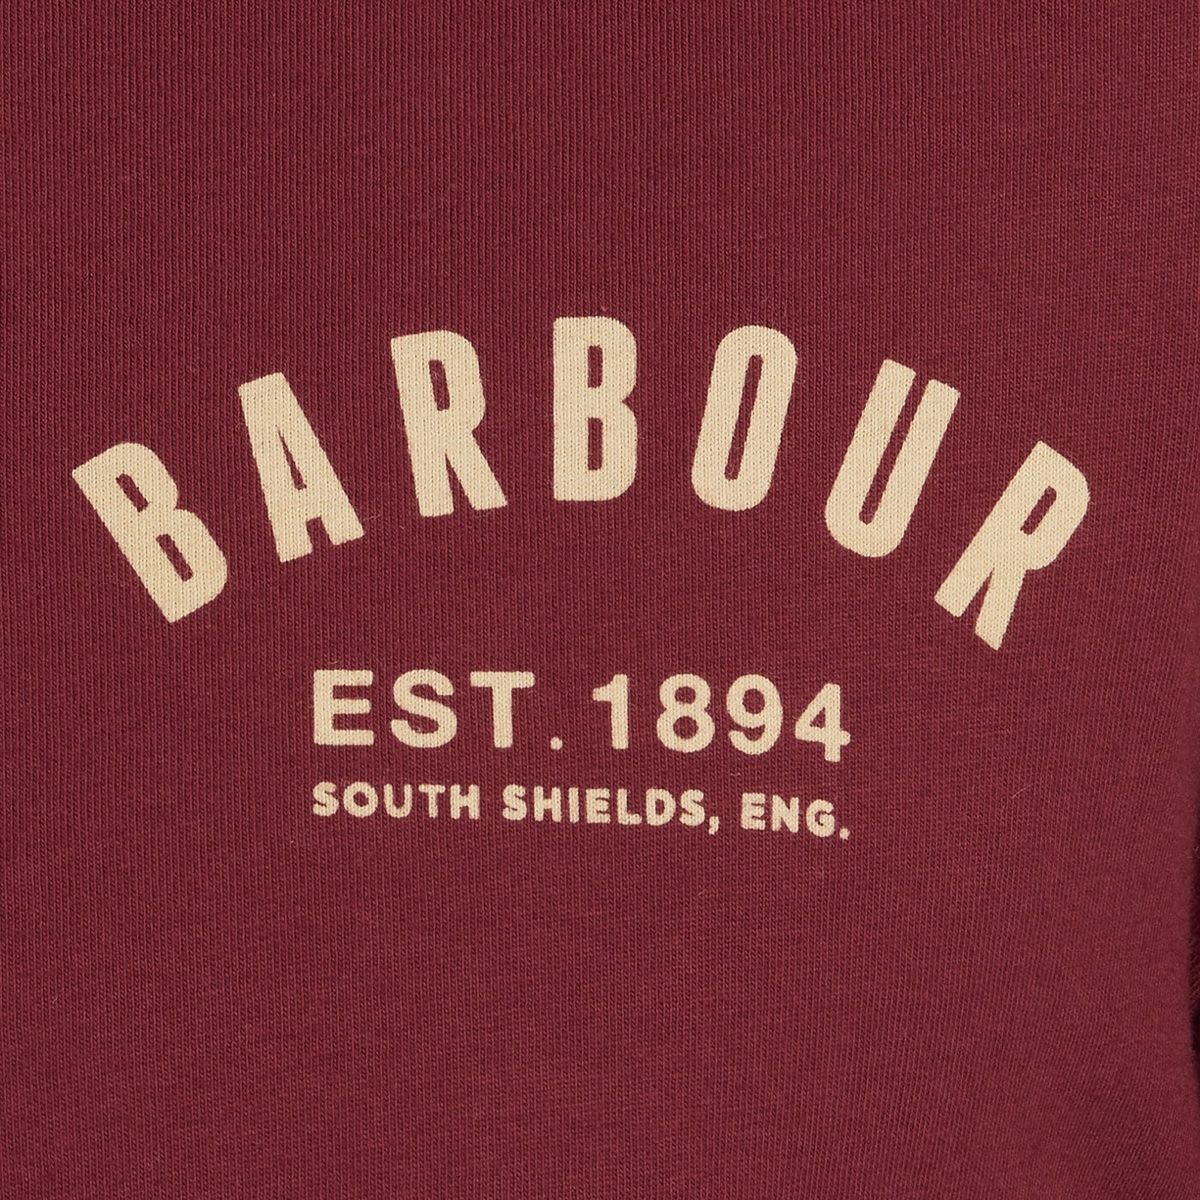 Barbour Men's Preppy T-Shirt | Ruby